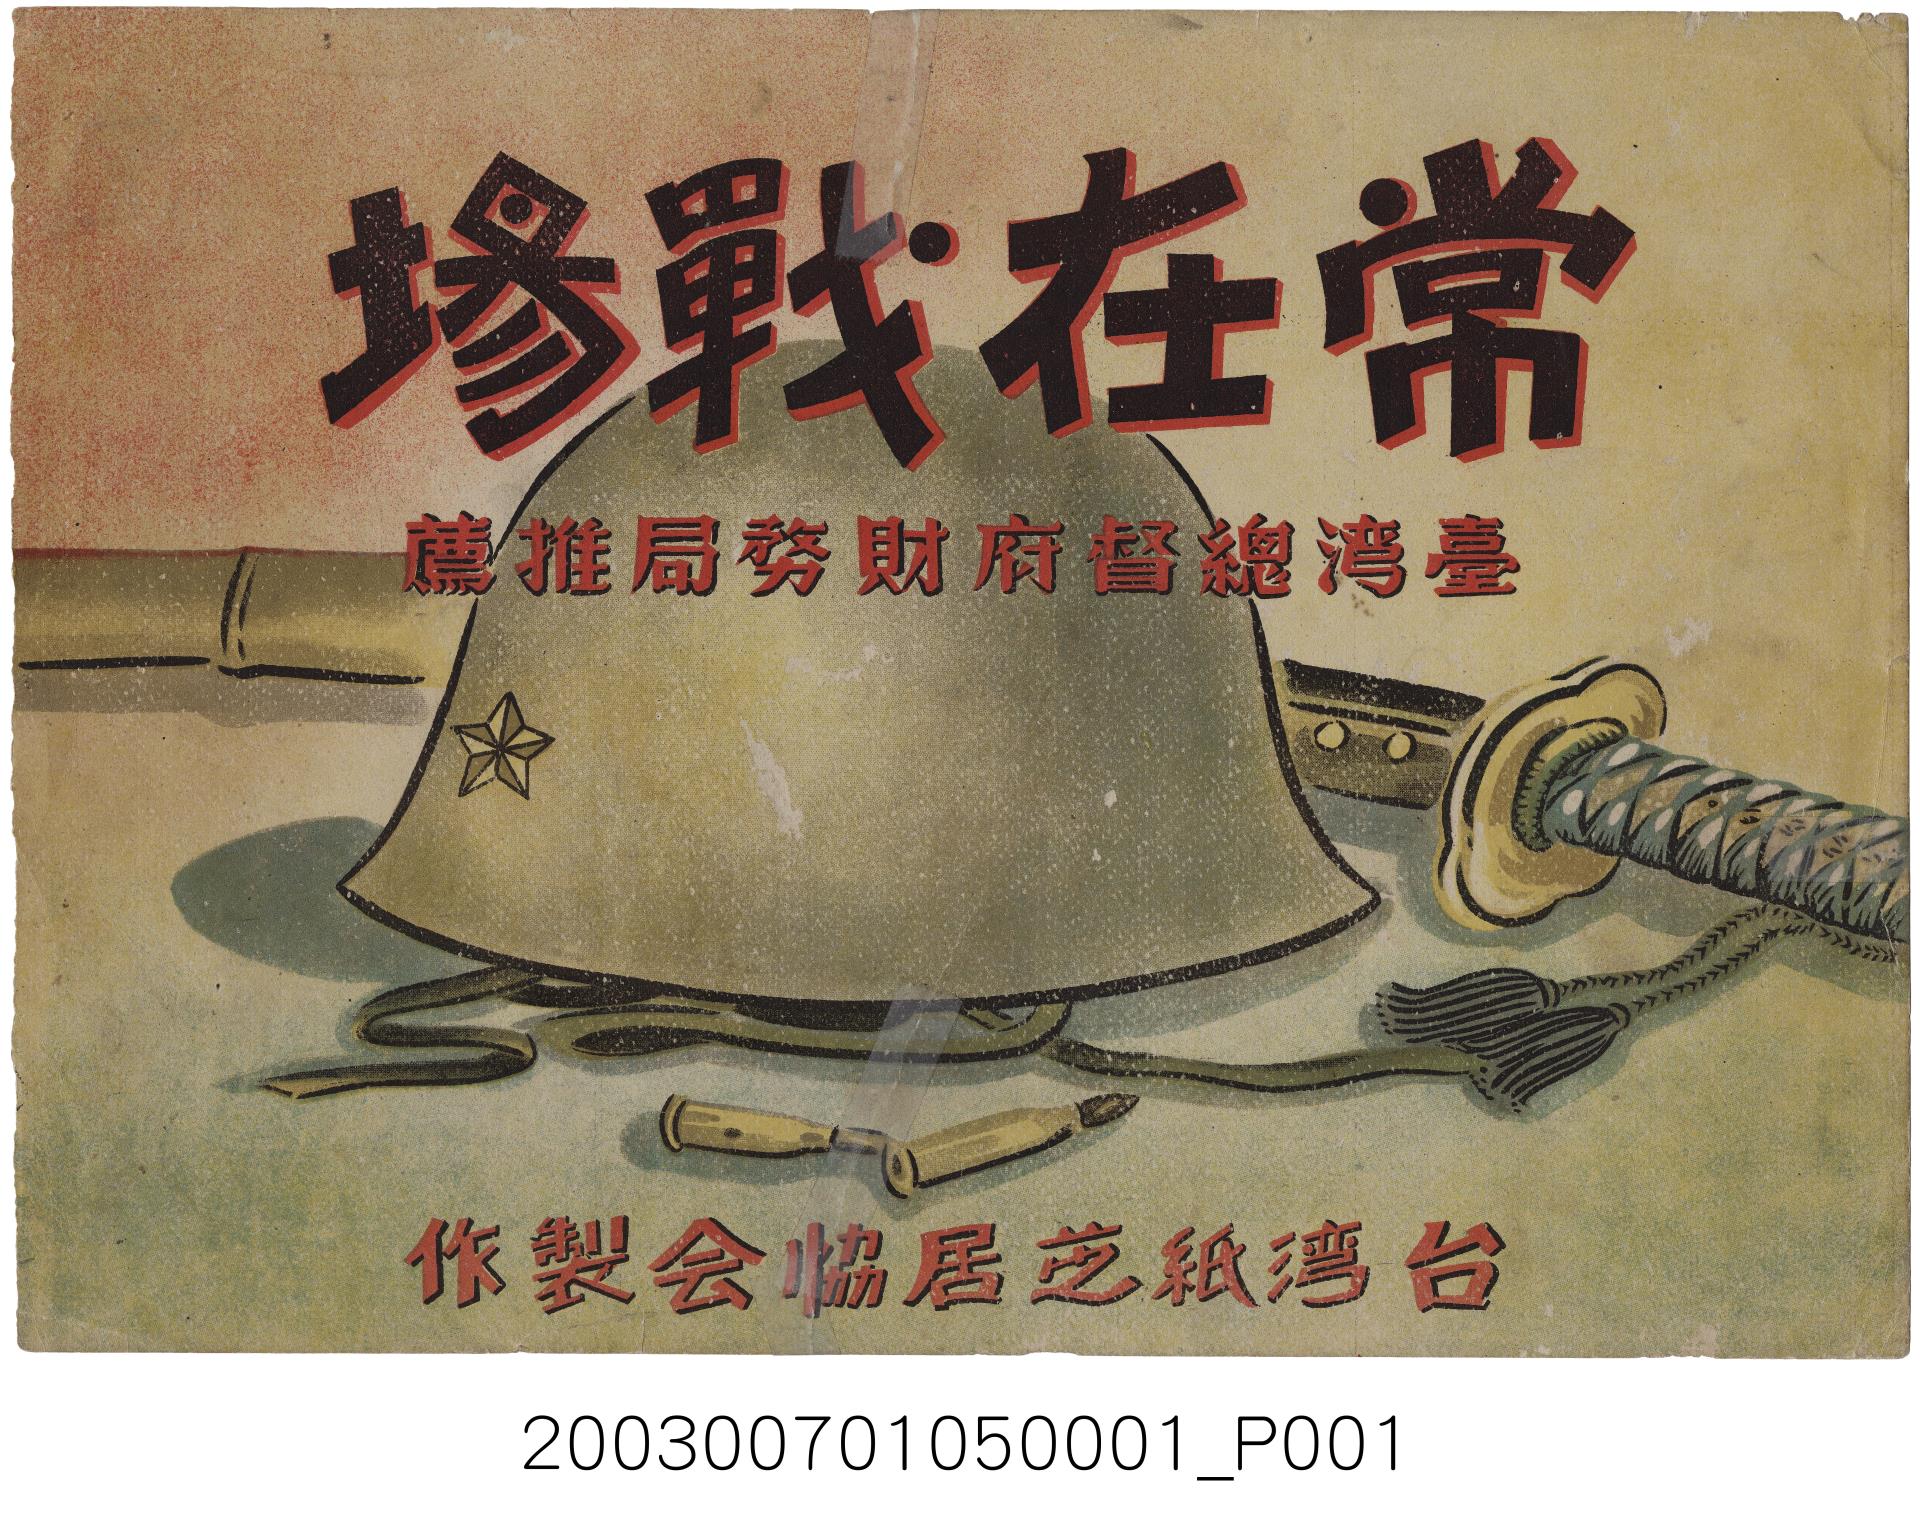 臺灣紙芝居協會《常在戰場》紙芝居封面 (共2張)